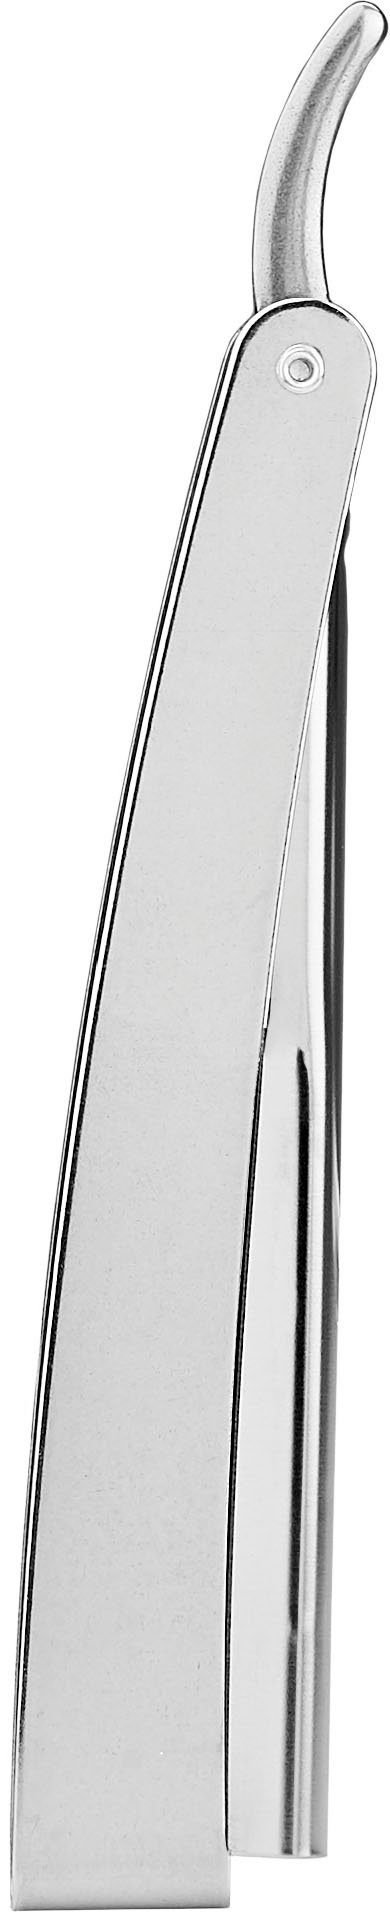 FRIPAC 1955 Rasiermesser silberfarben, Rasiermesser Klappgriff mit praktischem